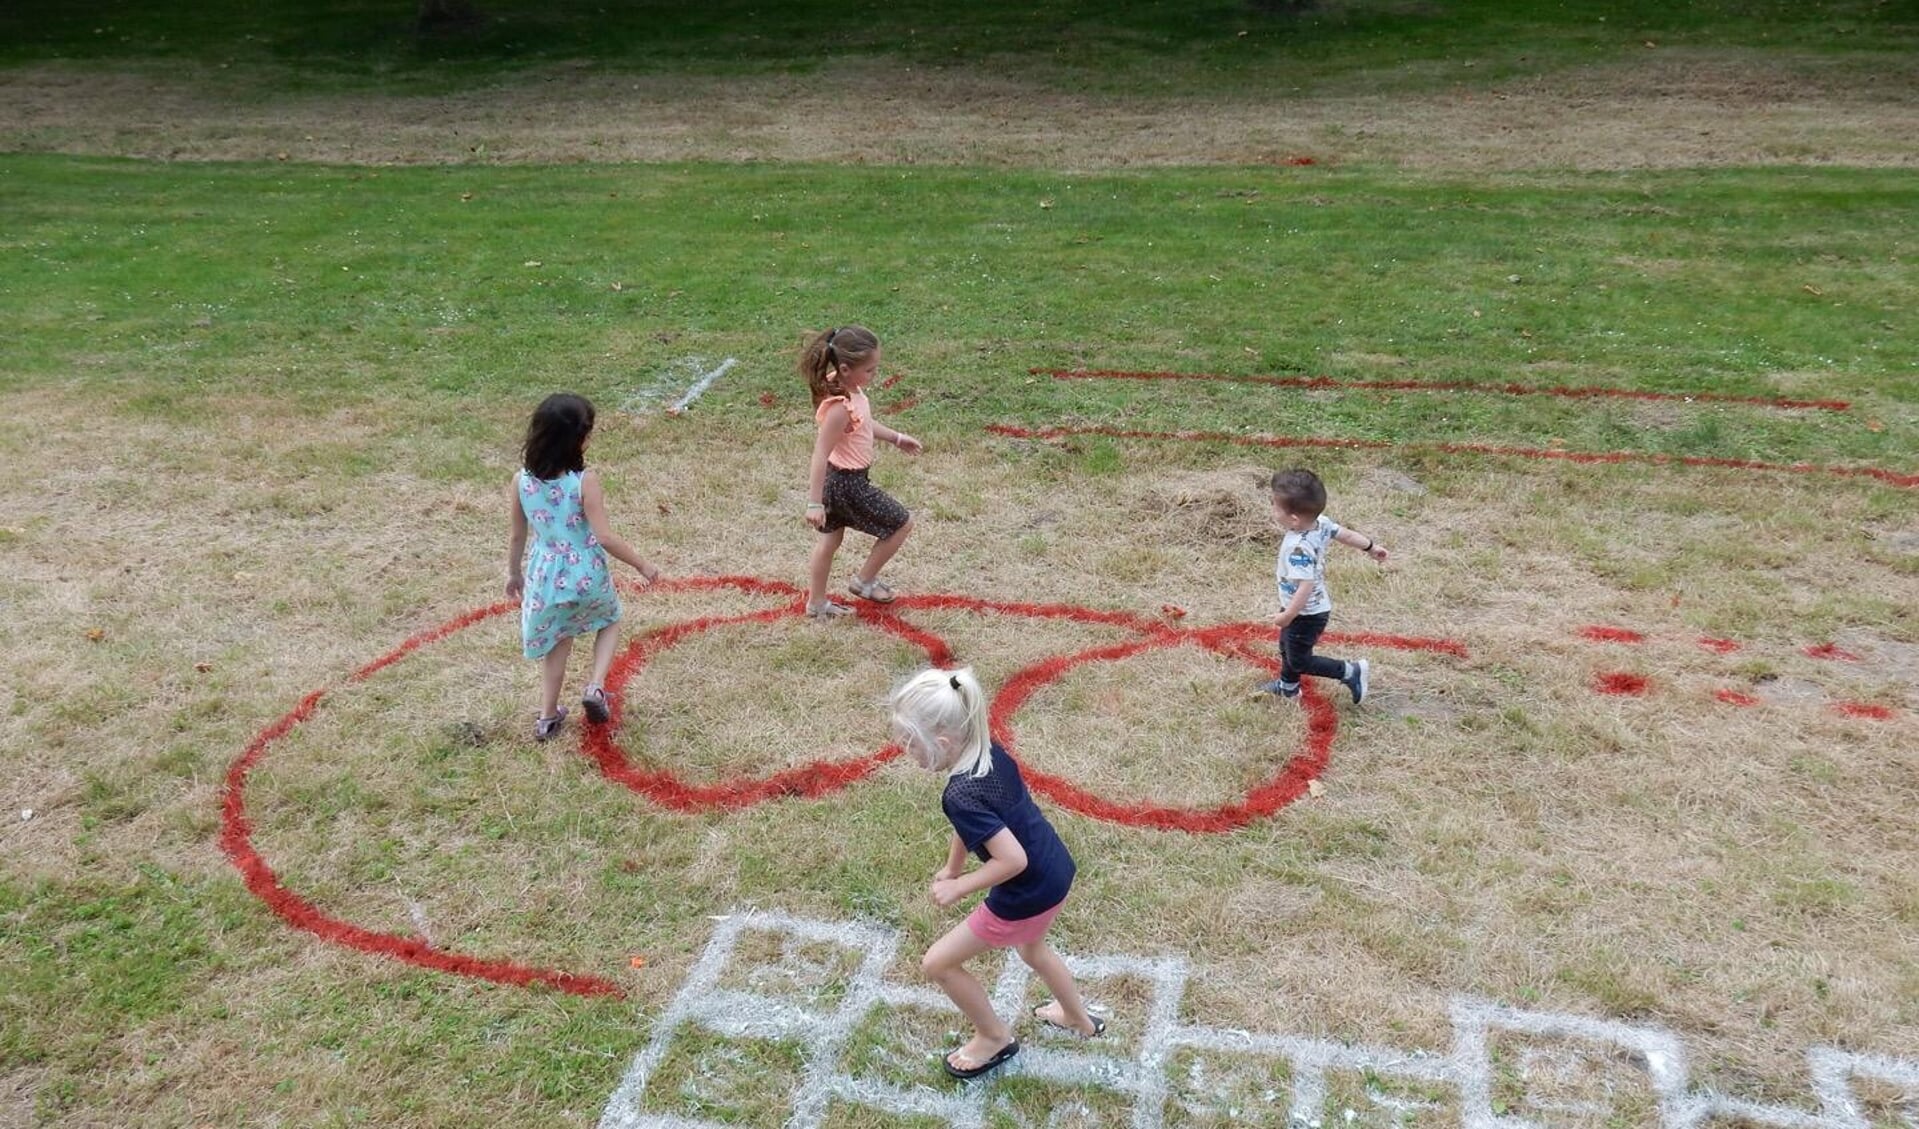 De kinderen vroegen een hinkelbaan en een speelparcours op het gras.